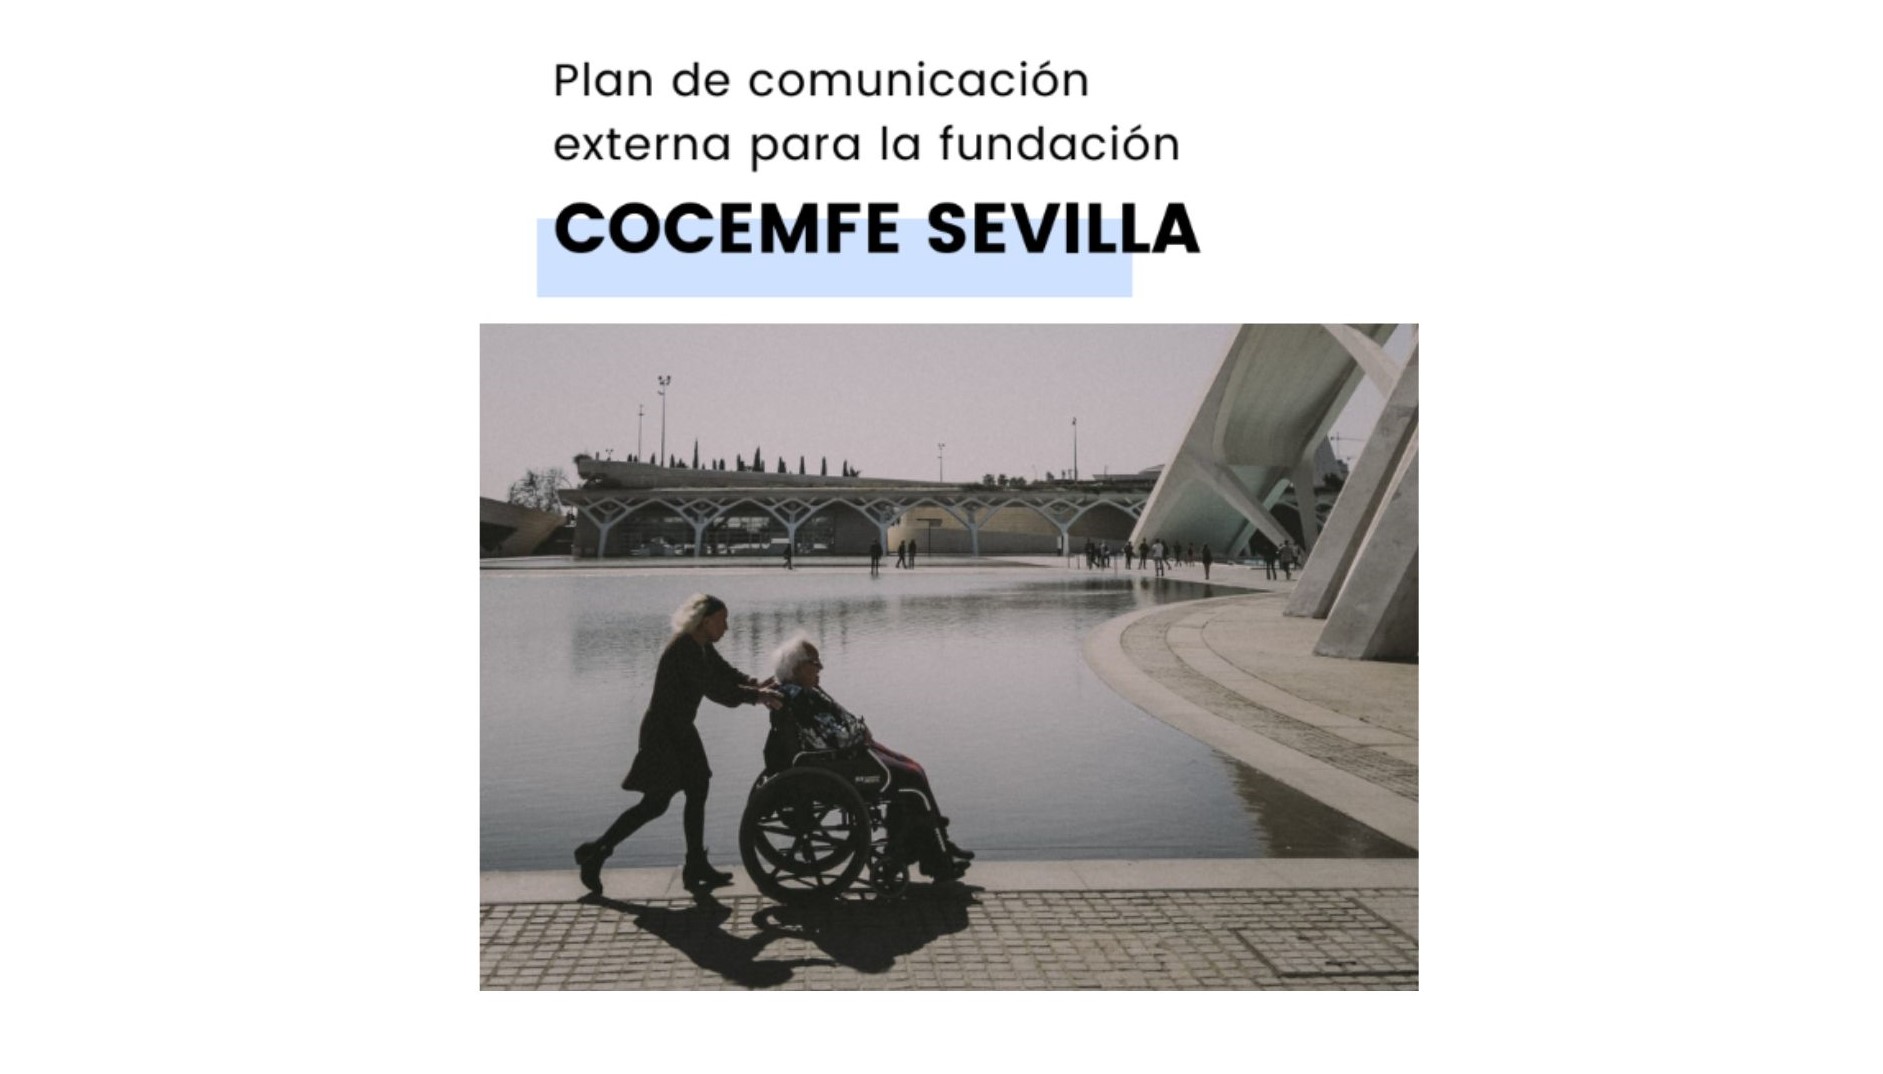 Plan de comunicacién
externa para la fundacion

COCEMFE SEVILLA